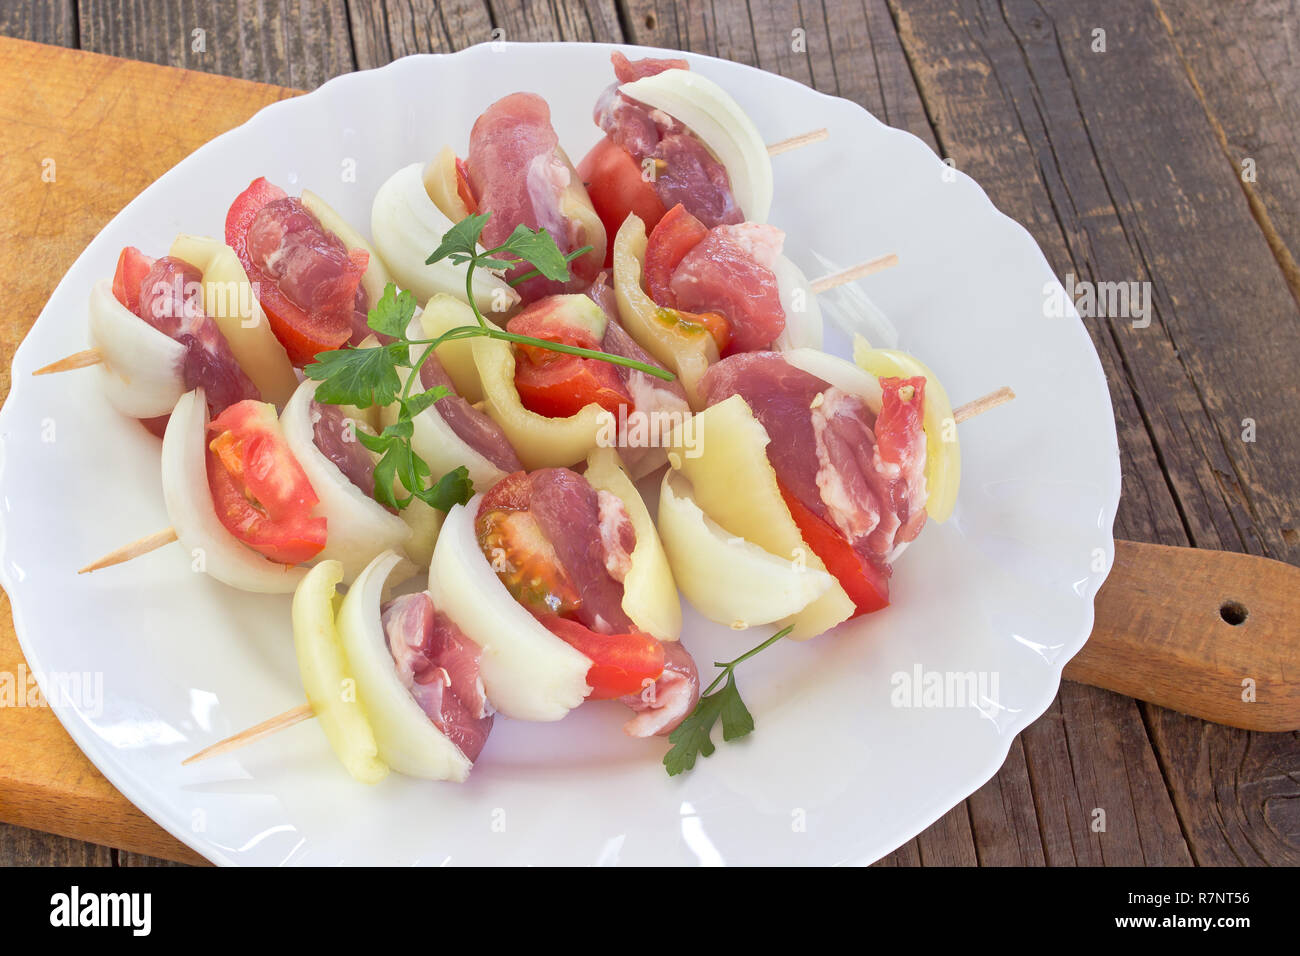 Carne cruda para la rejilla de la placa con las verduras en la placa de corte Foto de stock